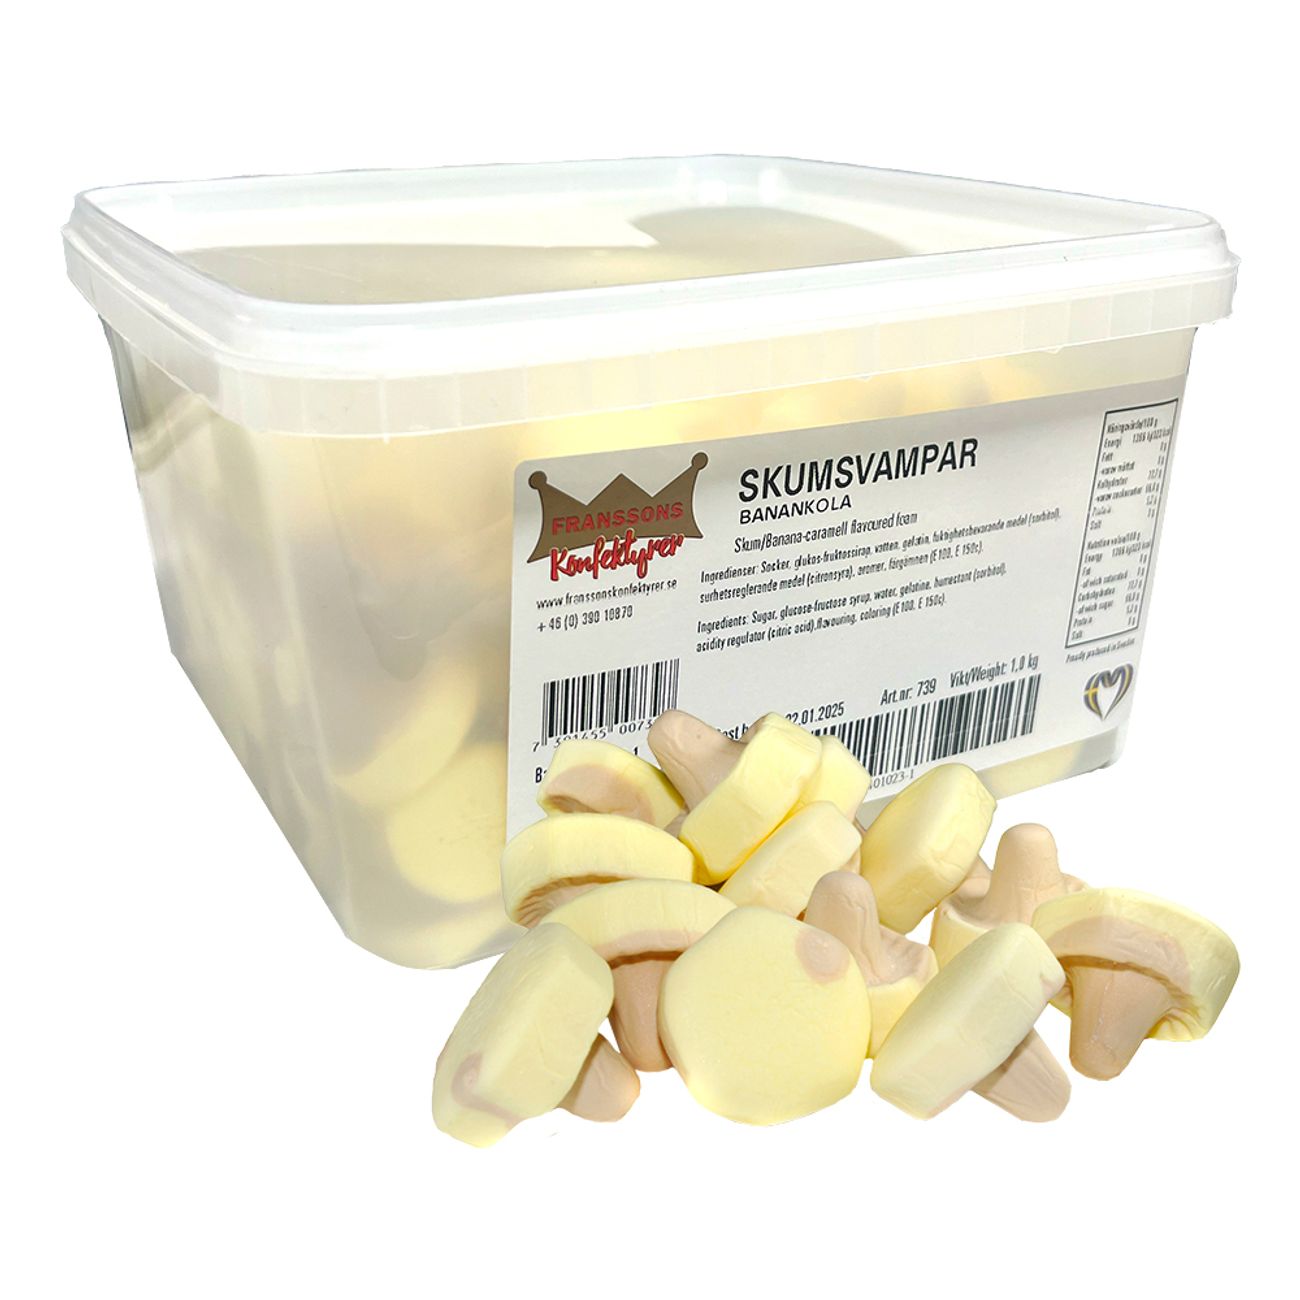 skumsvampar-banankola-storpack-85502-2